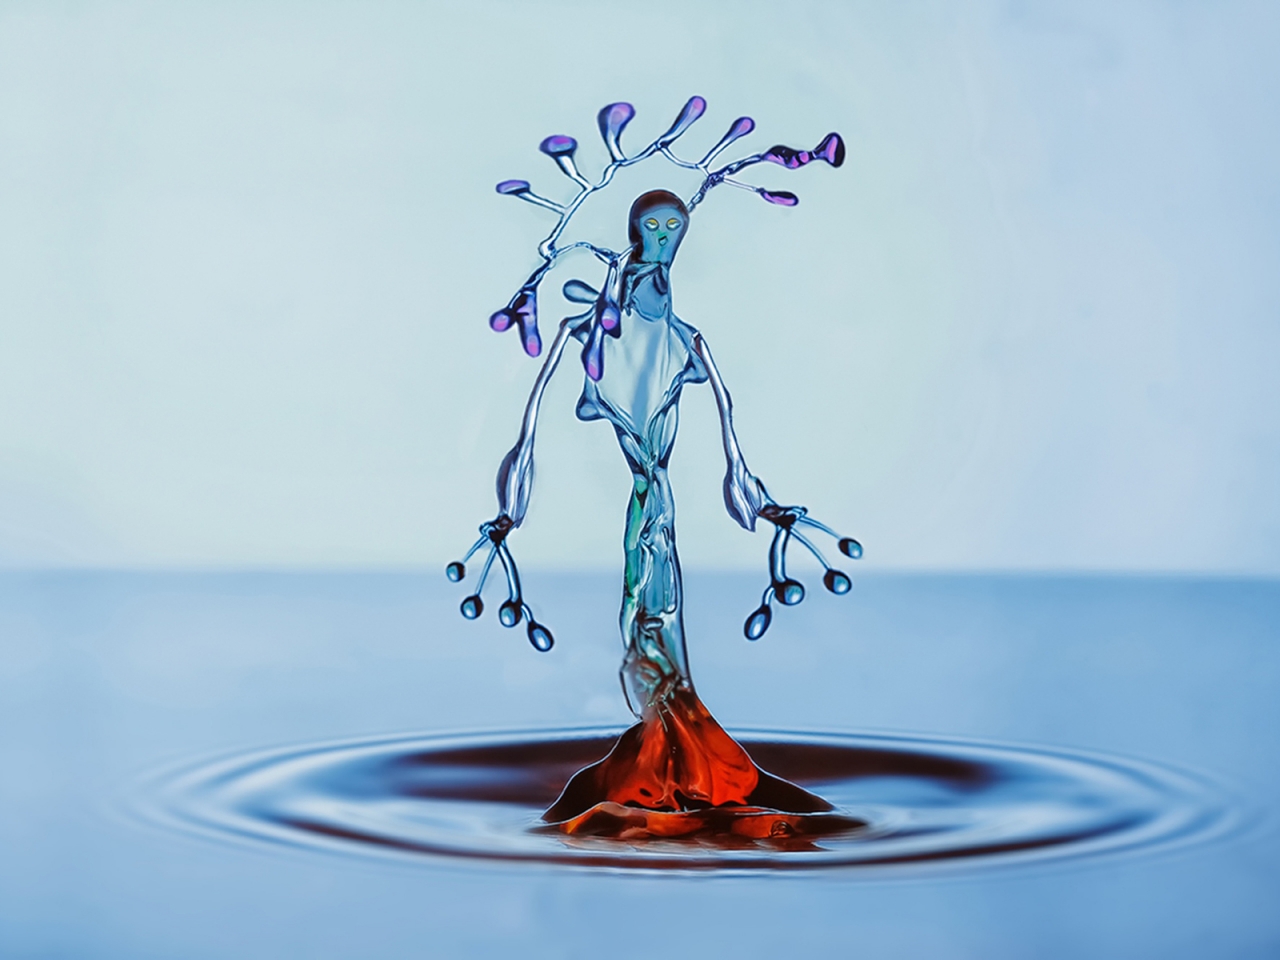 Water Splash Figurine for 1280 x 960 resolution